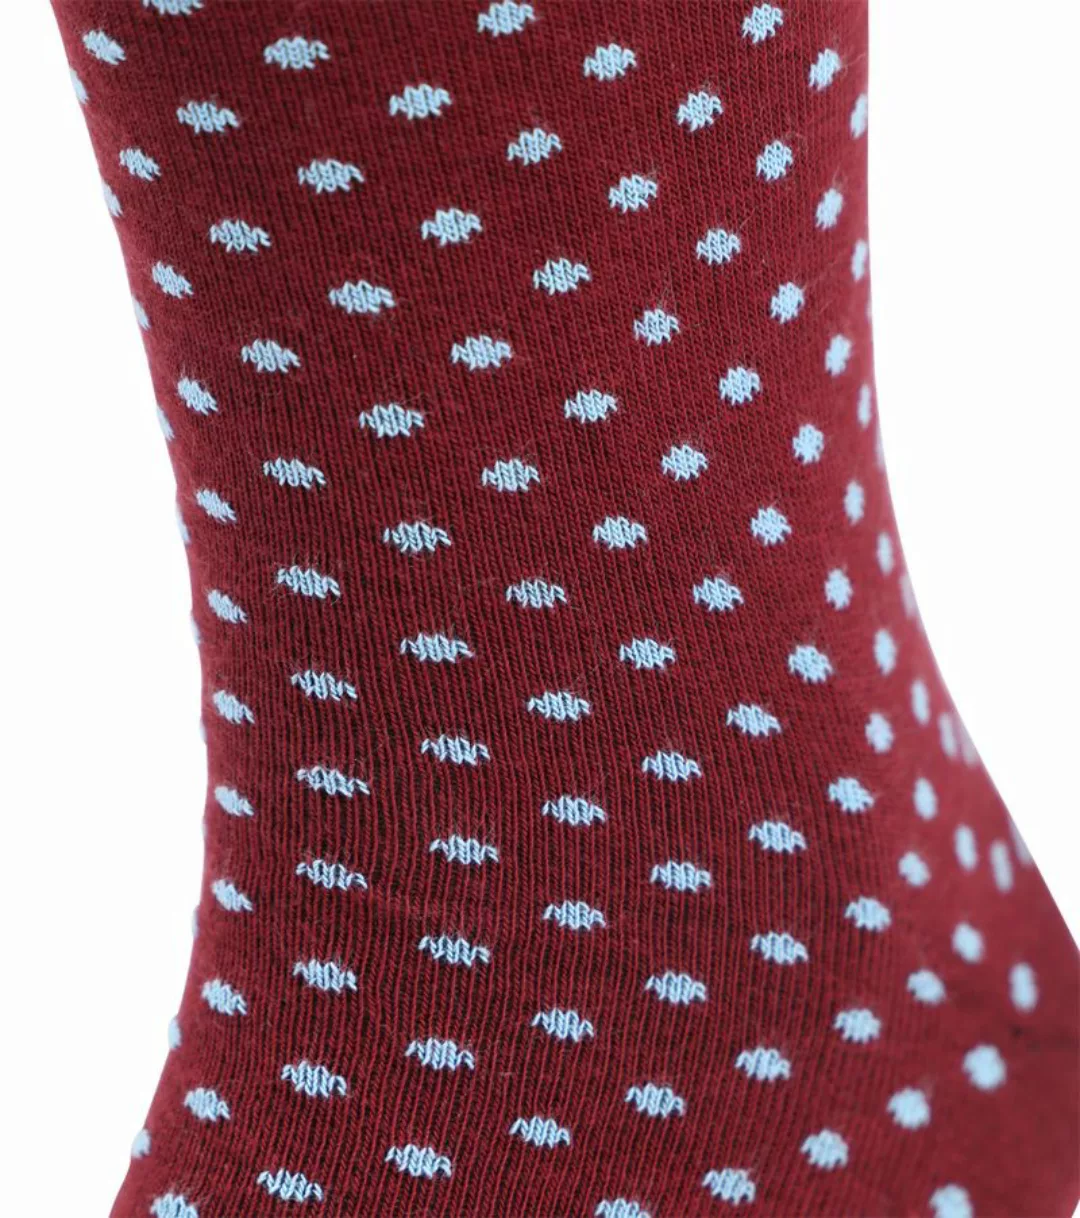 Suitable Socken 3-Pack Polka Dots Mehrfarbig - Größe 42-46 günstig online kaufen